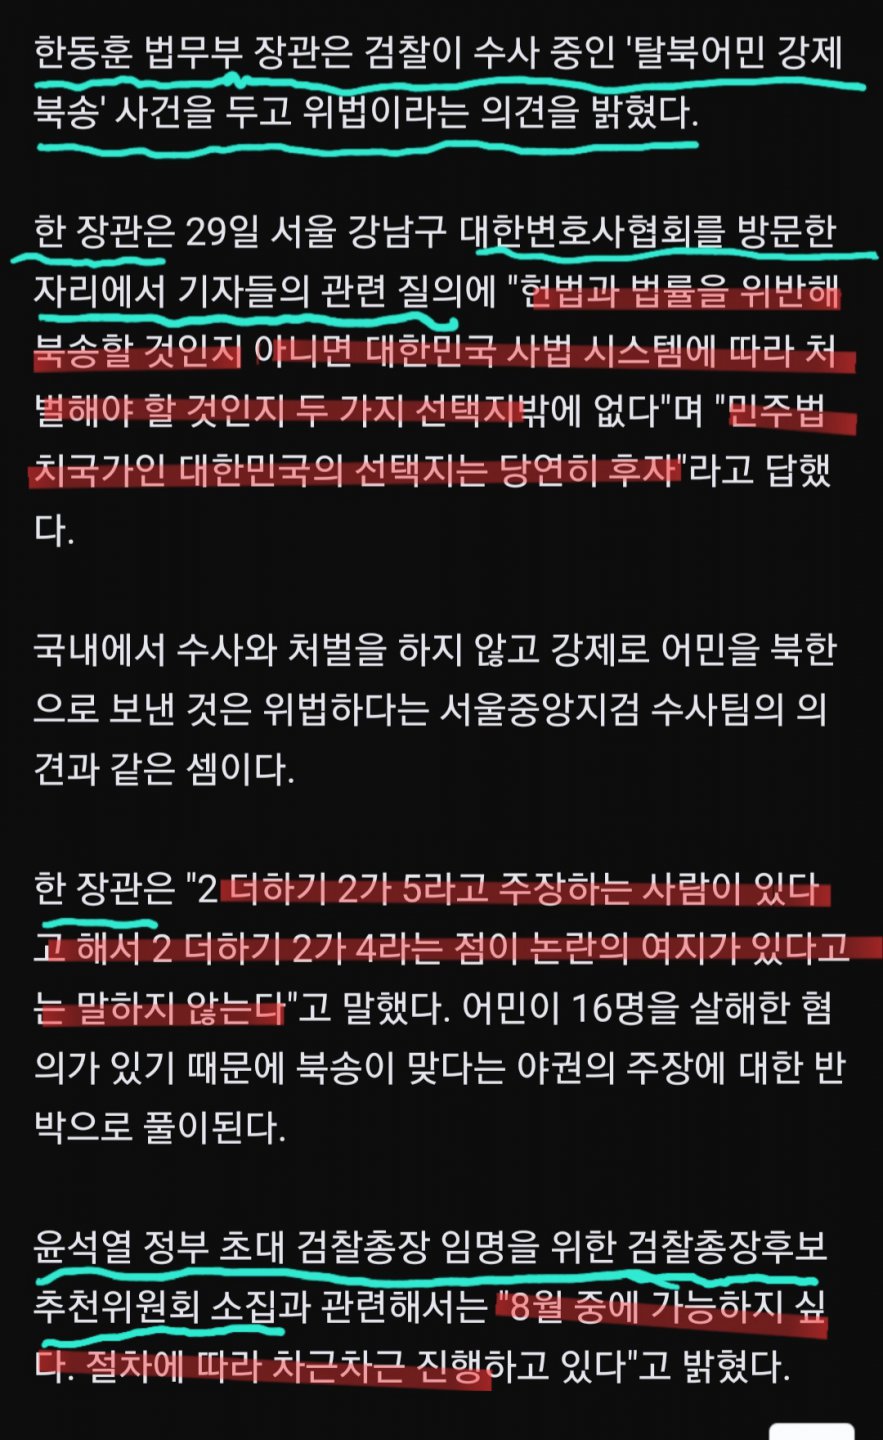 한똥훈 ""탈북어민 강제북송 위법, 국내 처벌 사안""